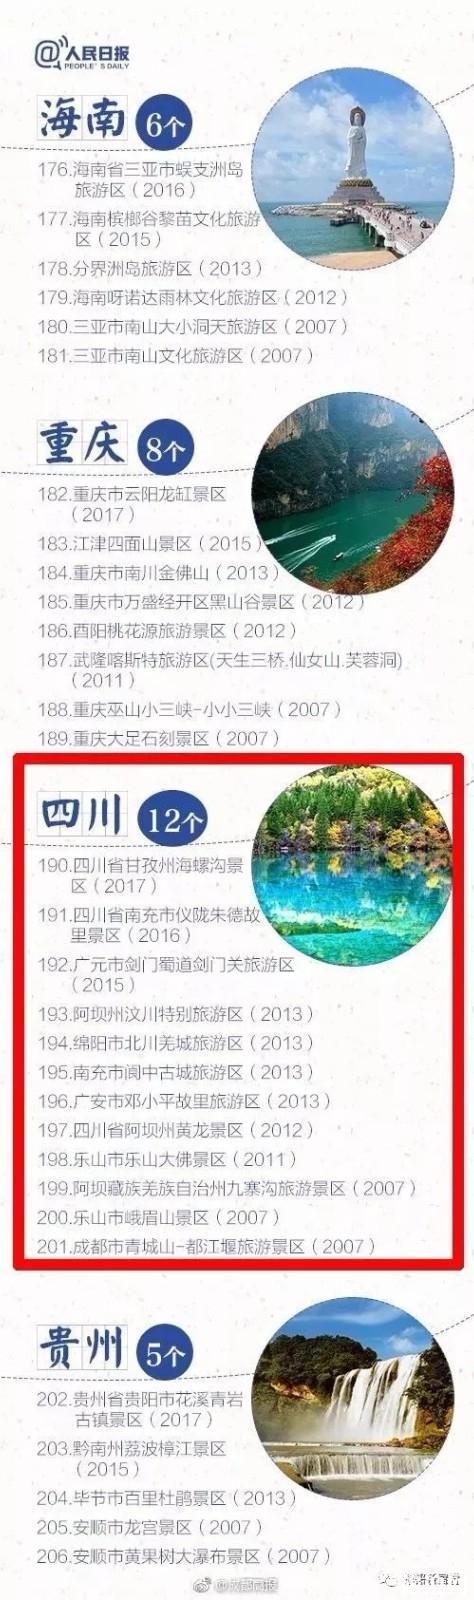 2018国庆节国内景区降价名单 桂林降价景区名单+降价后价格